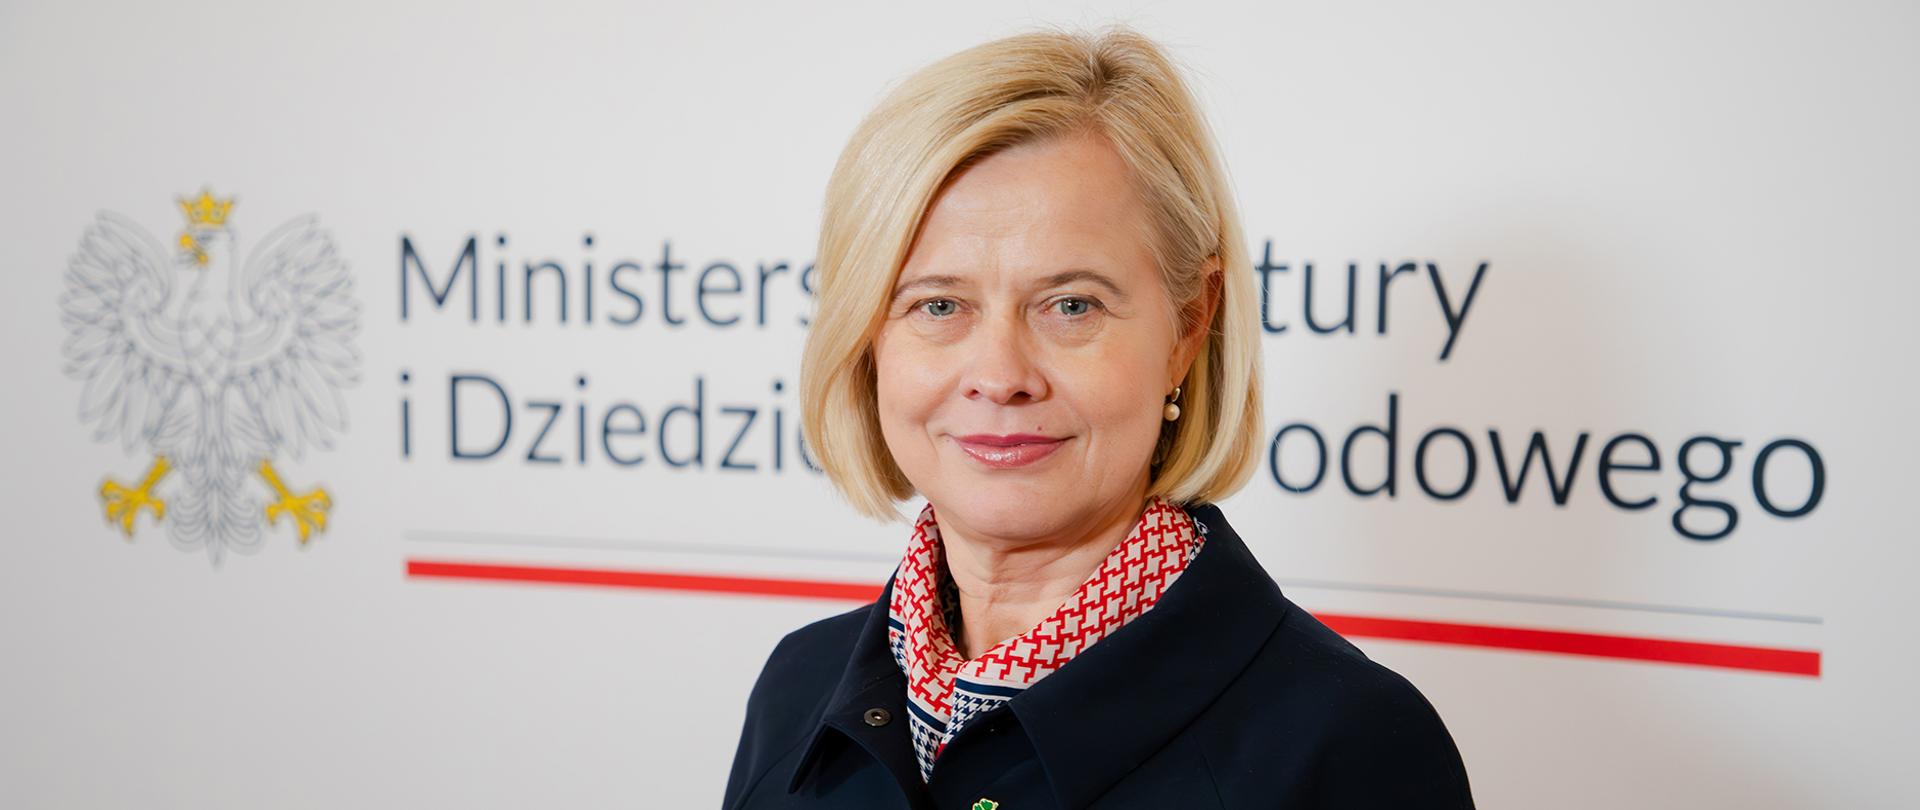 Bożena Żelazowska - sekretarz stanu, fot. Danuta Matloch